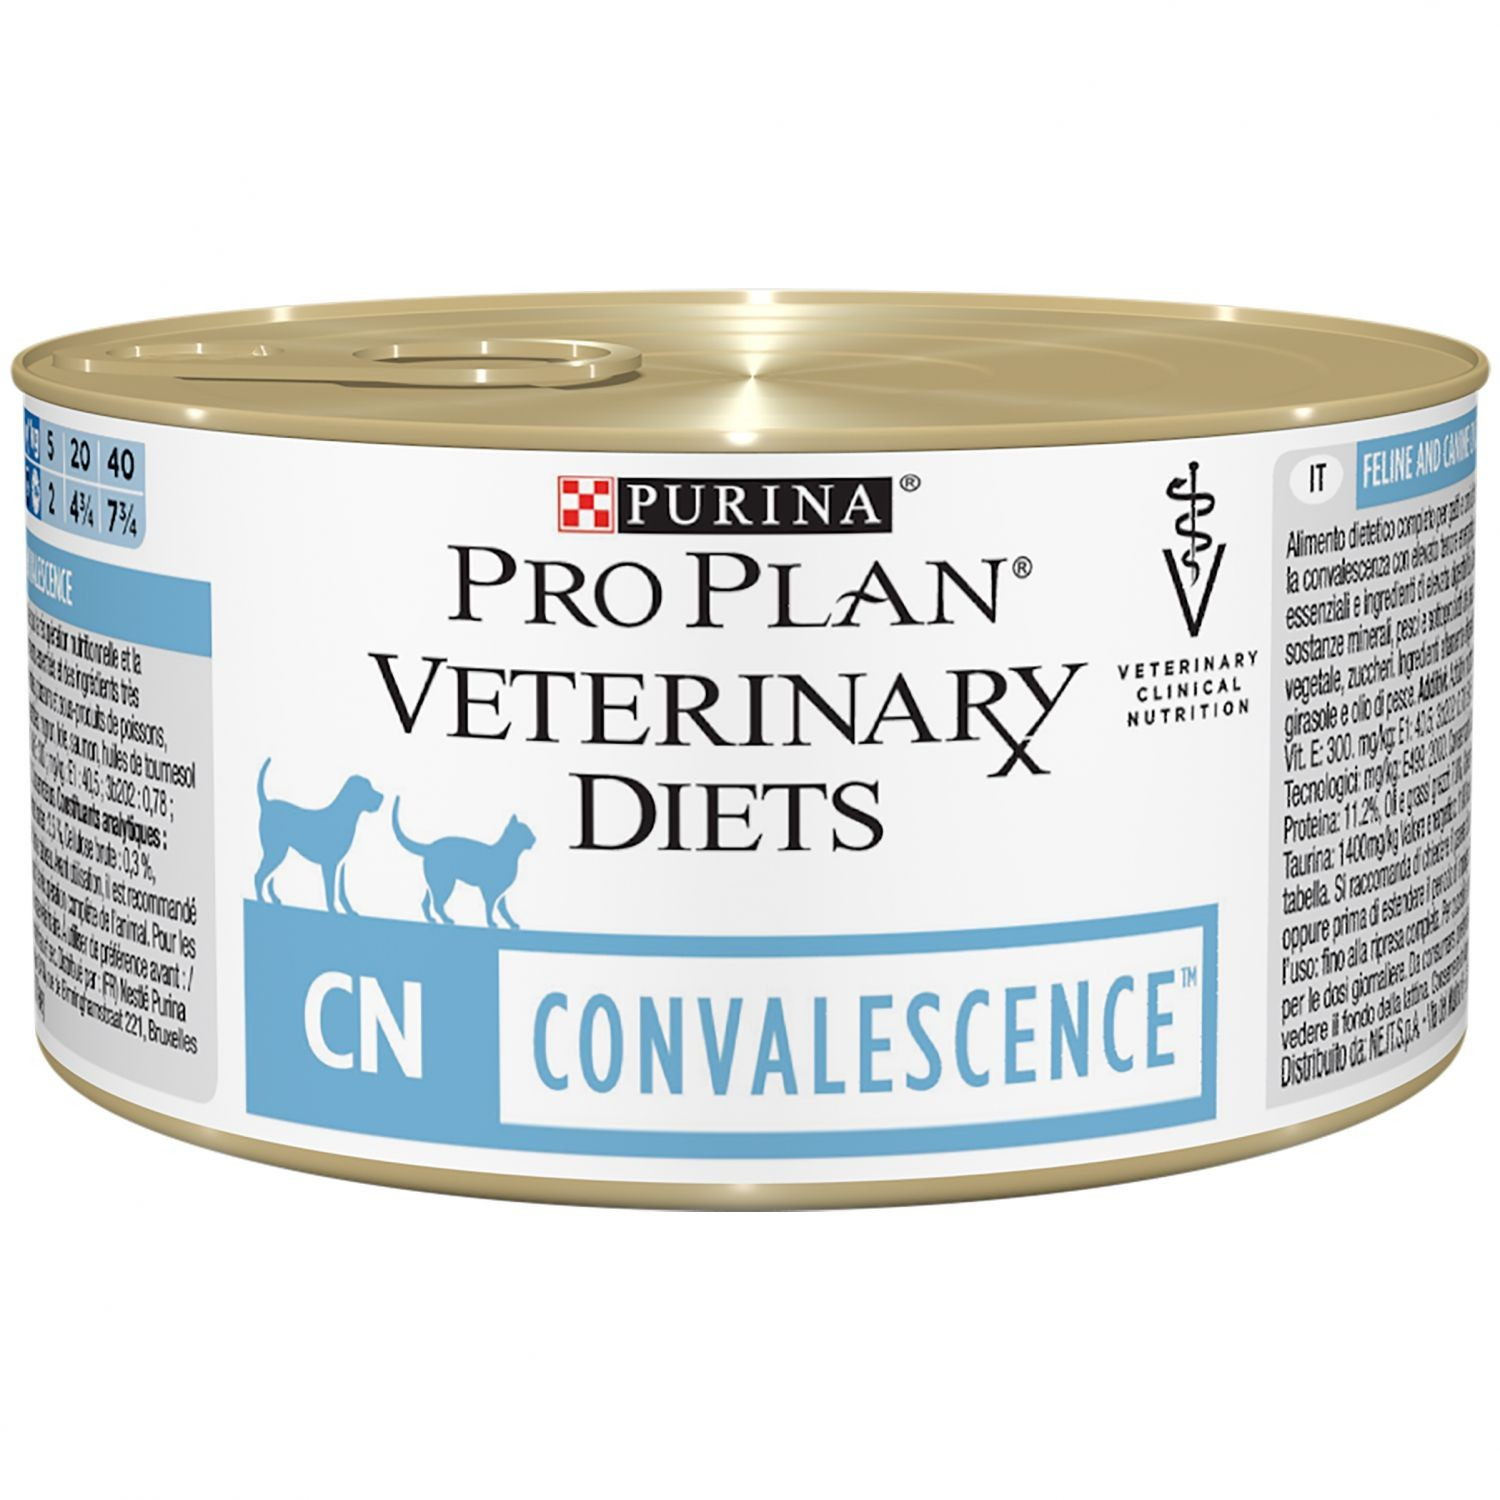 Alimentação Veterinária para cães e gatos Purina Pro Plan Veterinary Diets CN para Recuperação - paté 195g